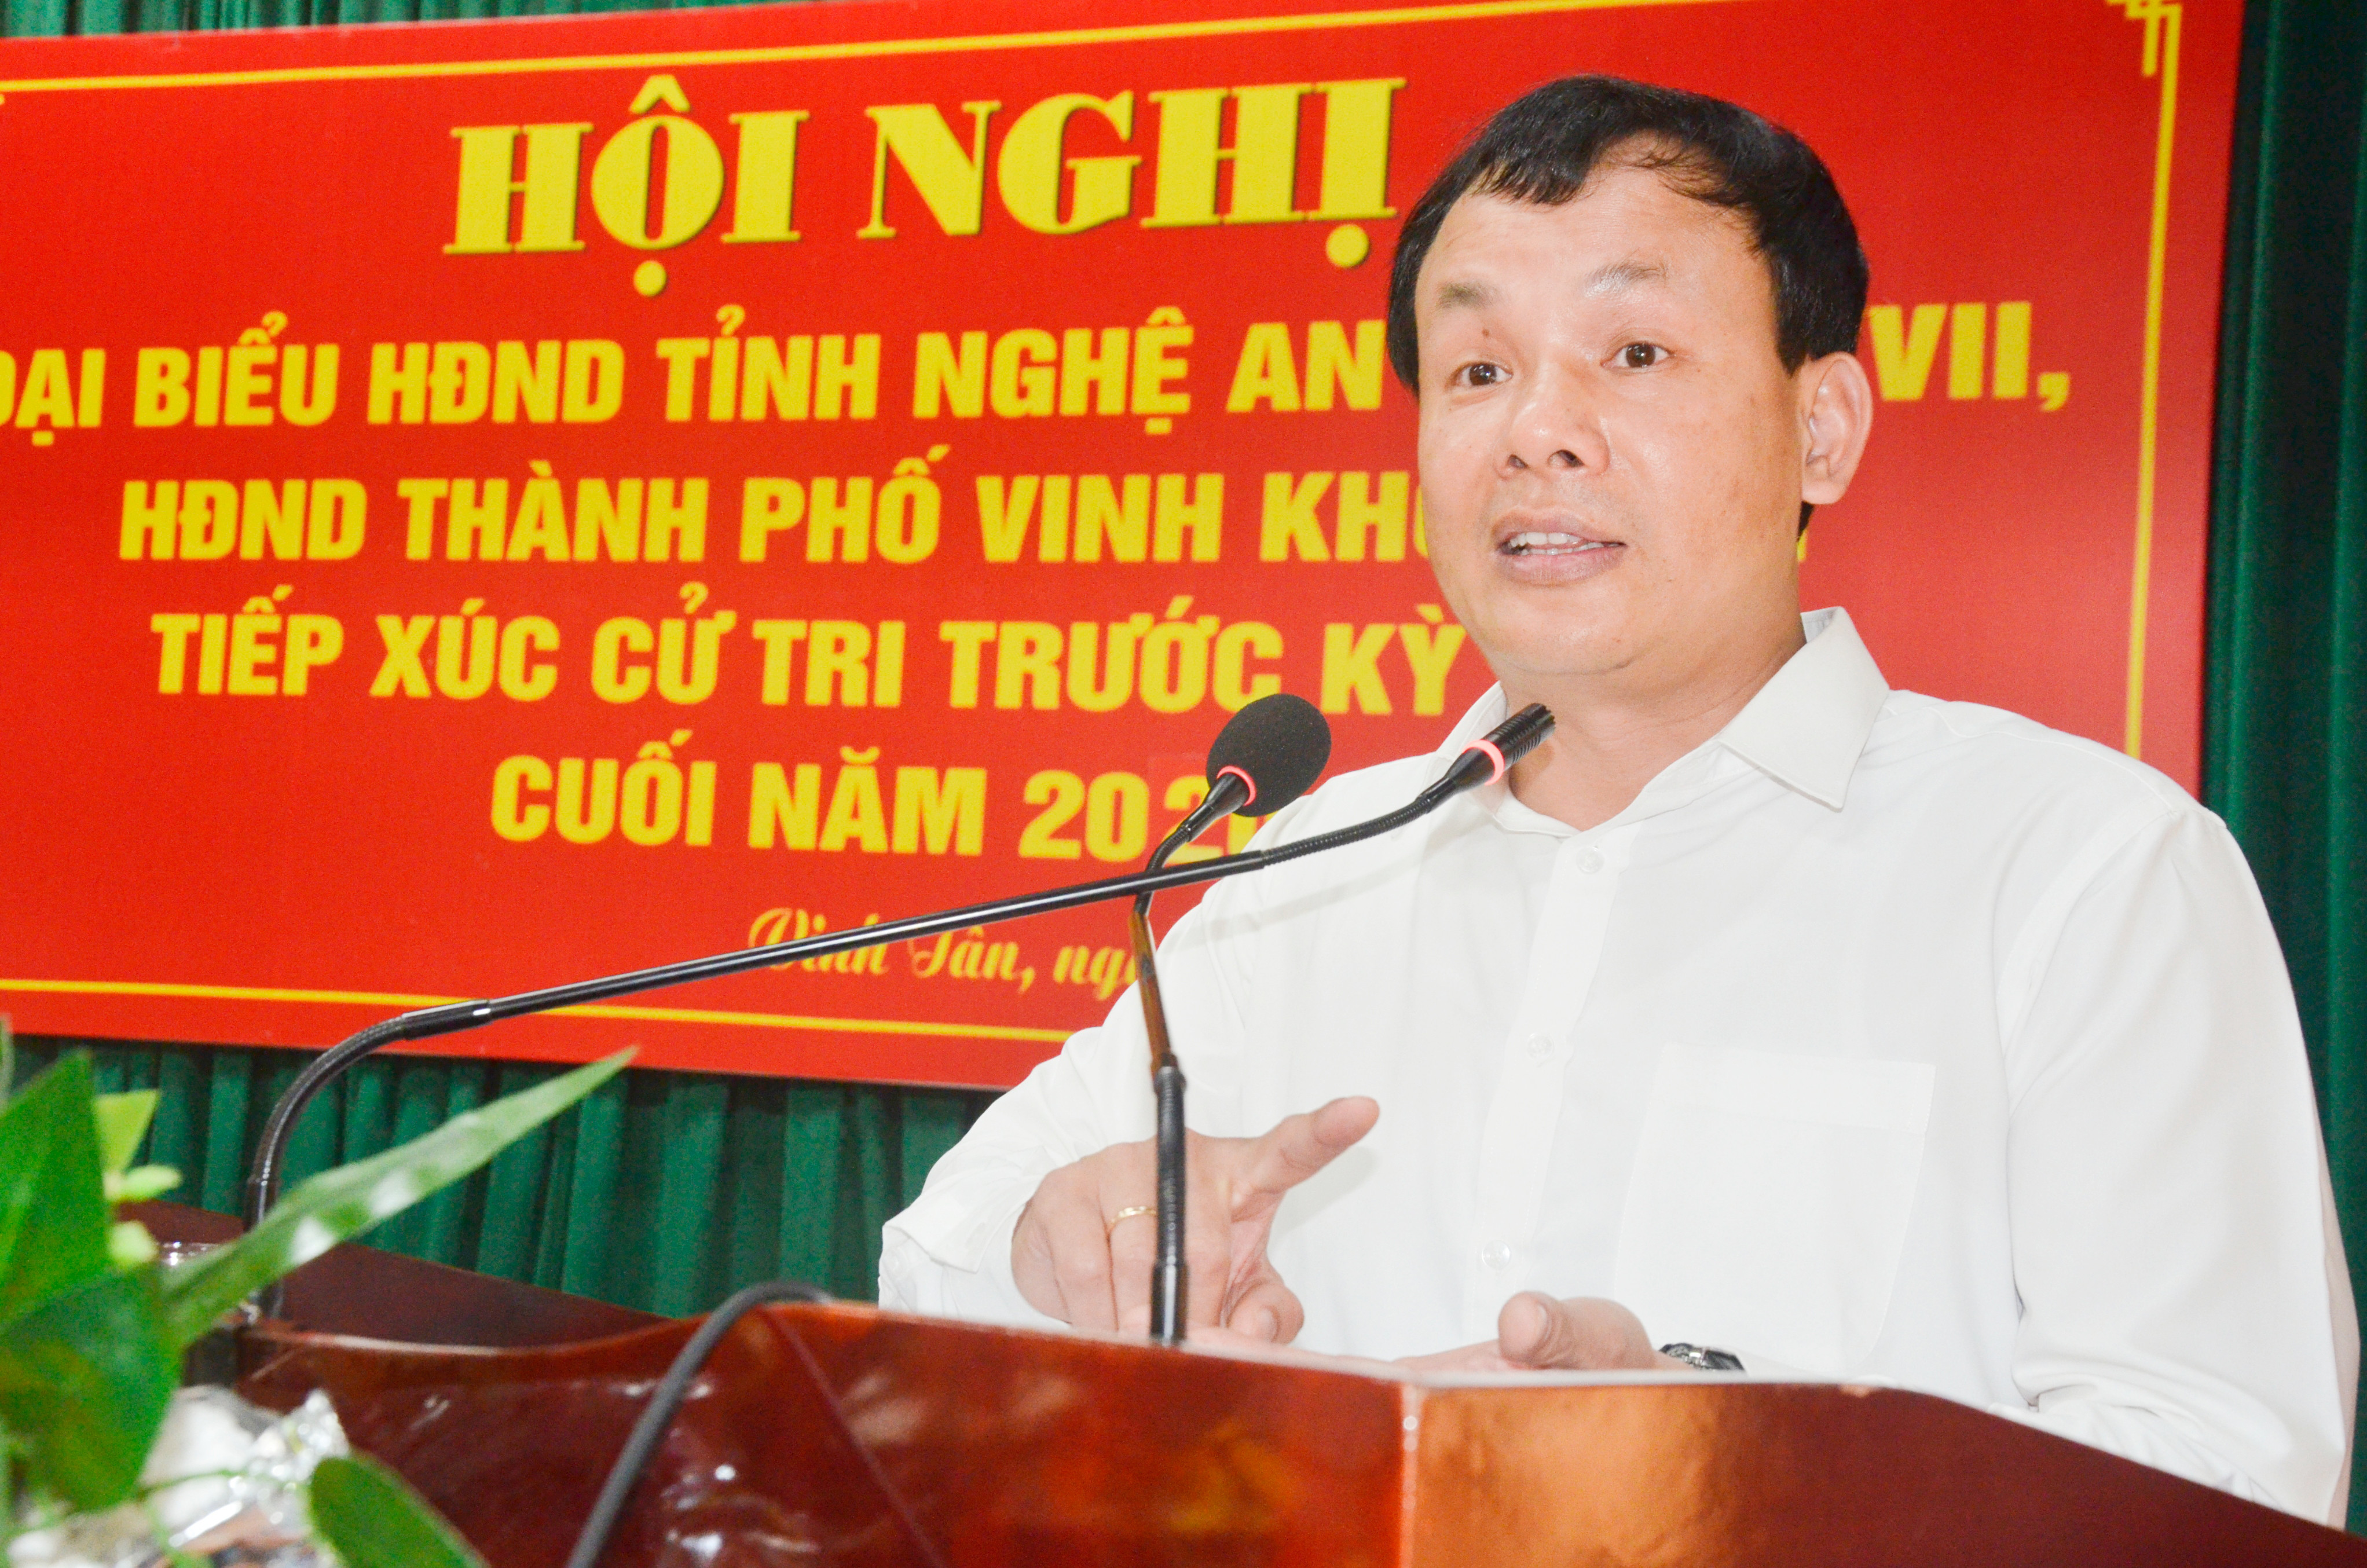 Phó Chủ tịch HĐND thành phố Vinh Phan Minh Tuấn báo cáo kết quả kinh tế - xã hội của thành phố Vinh. Ảnh: Thanh Lê